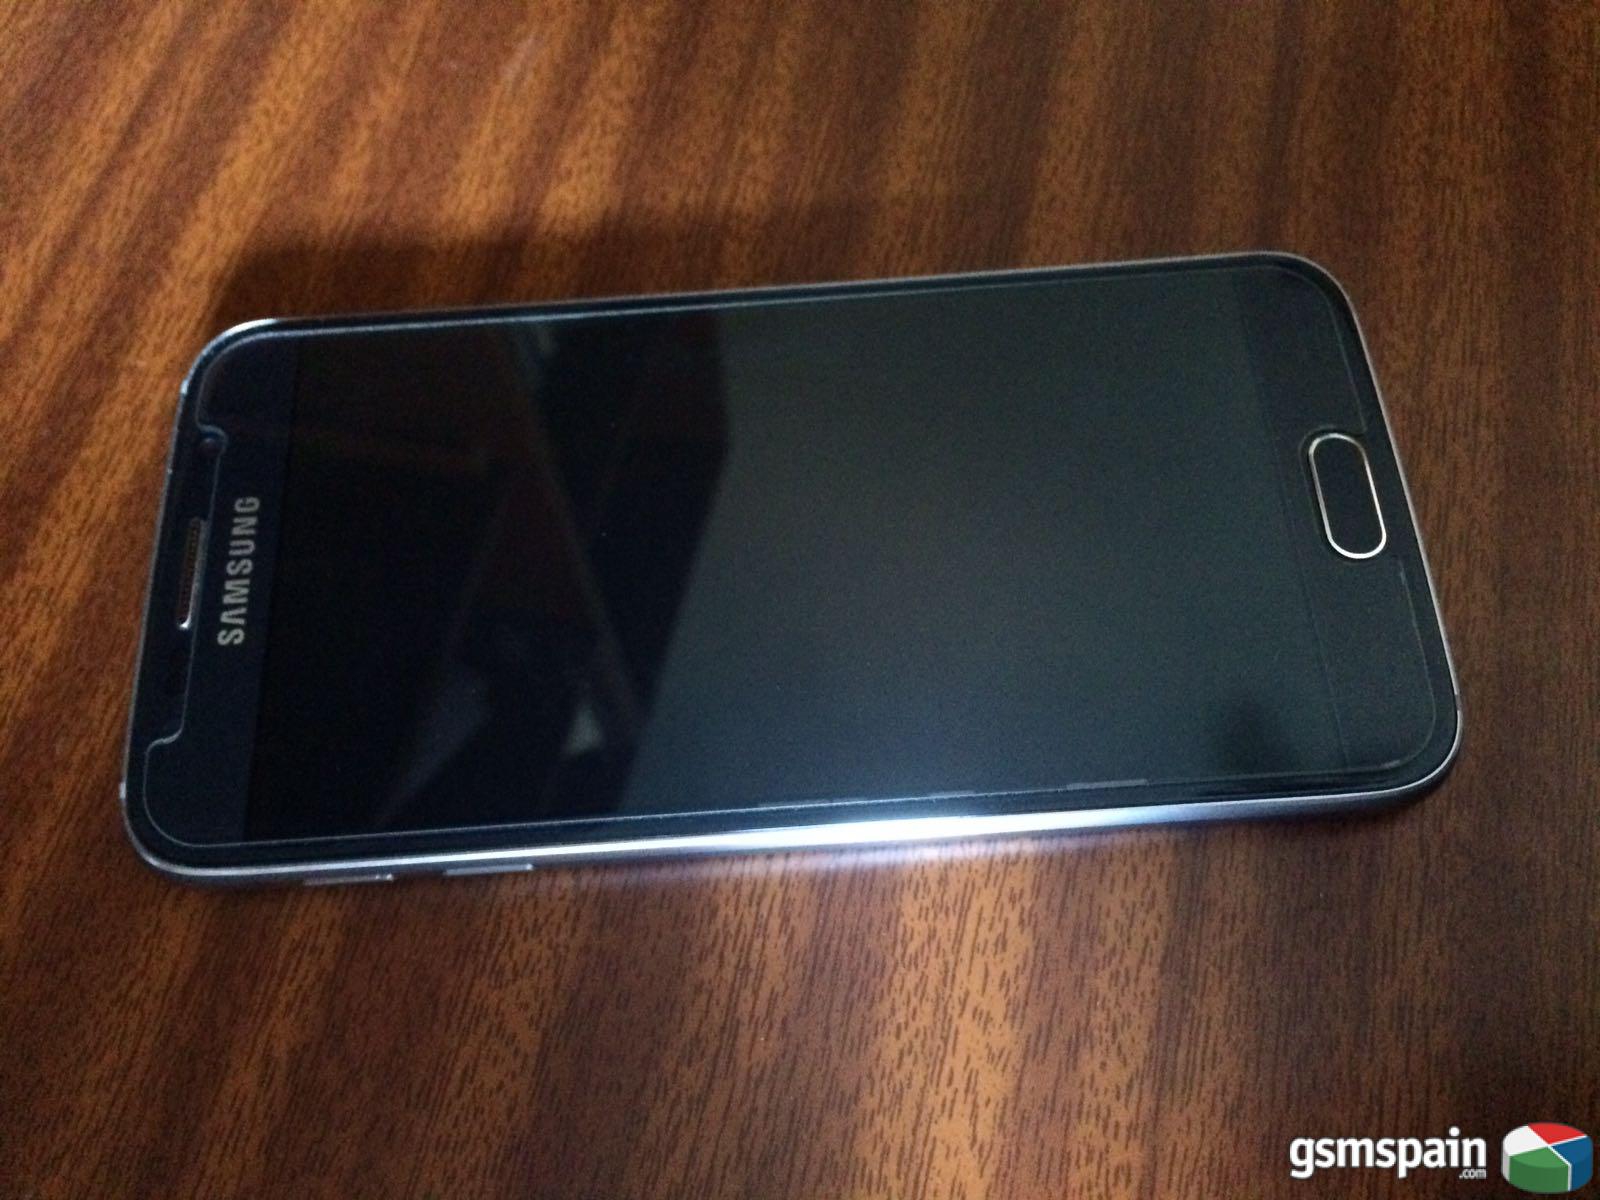 [VENDO] Samsung Galaxy S6 32 Gb